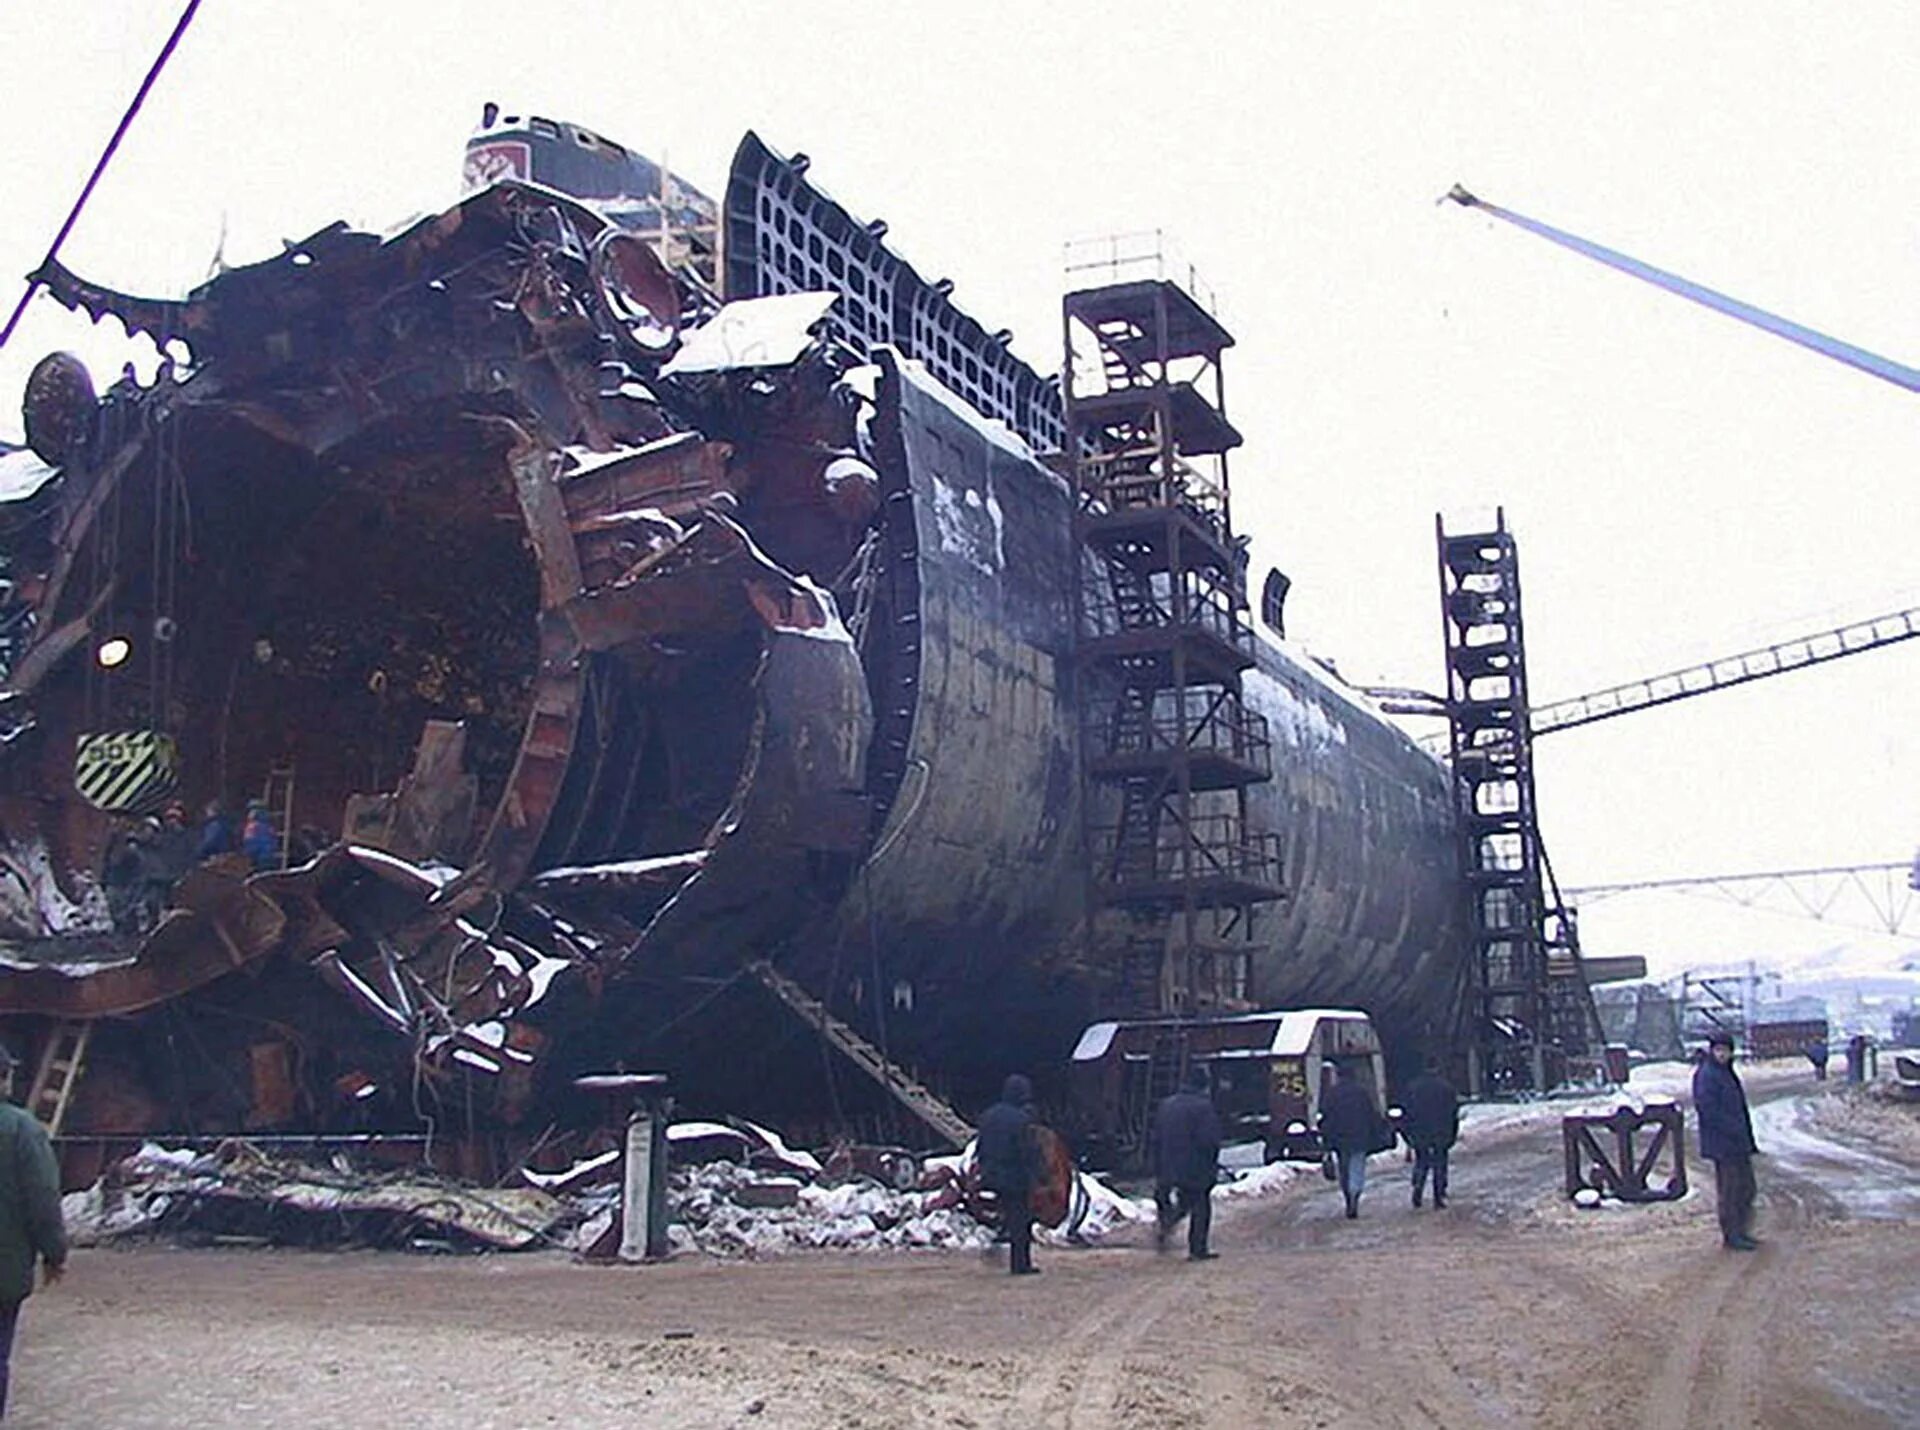 Где затонул курск подводная. Гибель атомной подводной лодки к-141 "Курск". Курск 141 атомная подводная лодка. Гибель атомной подводной лодки Курск. К-141 «Курск».